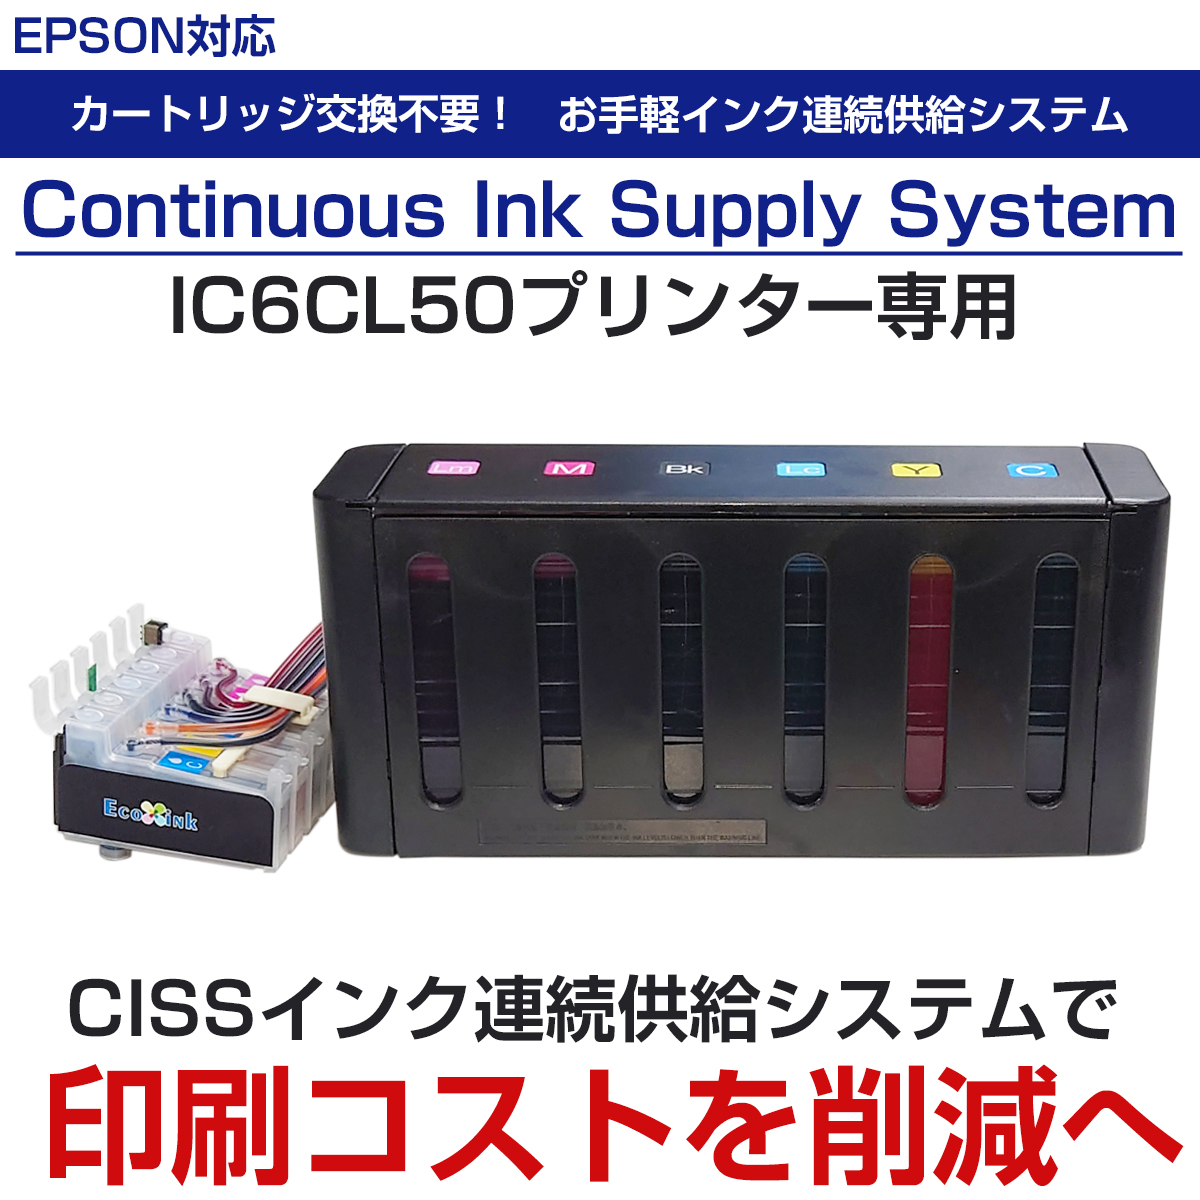 CISSインク連続供給システム BOXタイプ 6色インク IC6CL エプソンプリンター対応 EPSON 業務用 印刷コスト削減 経済的 エコ  タンク 式